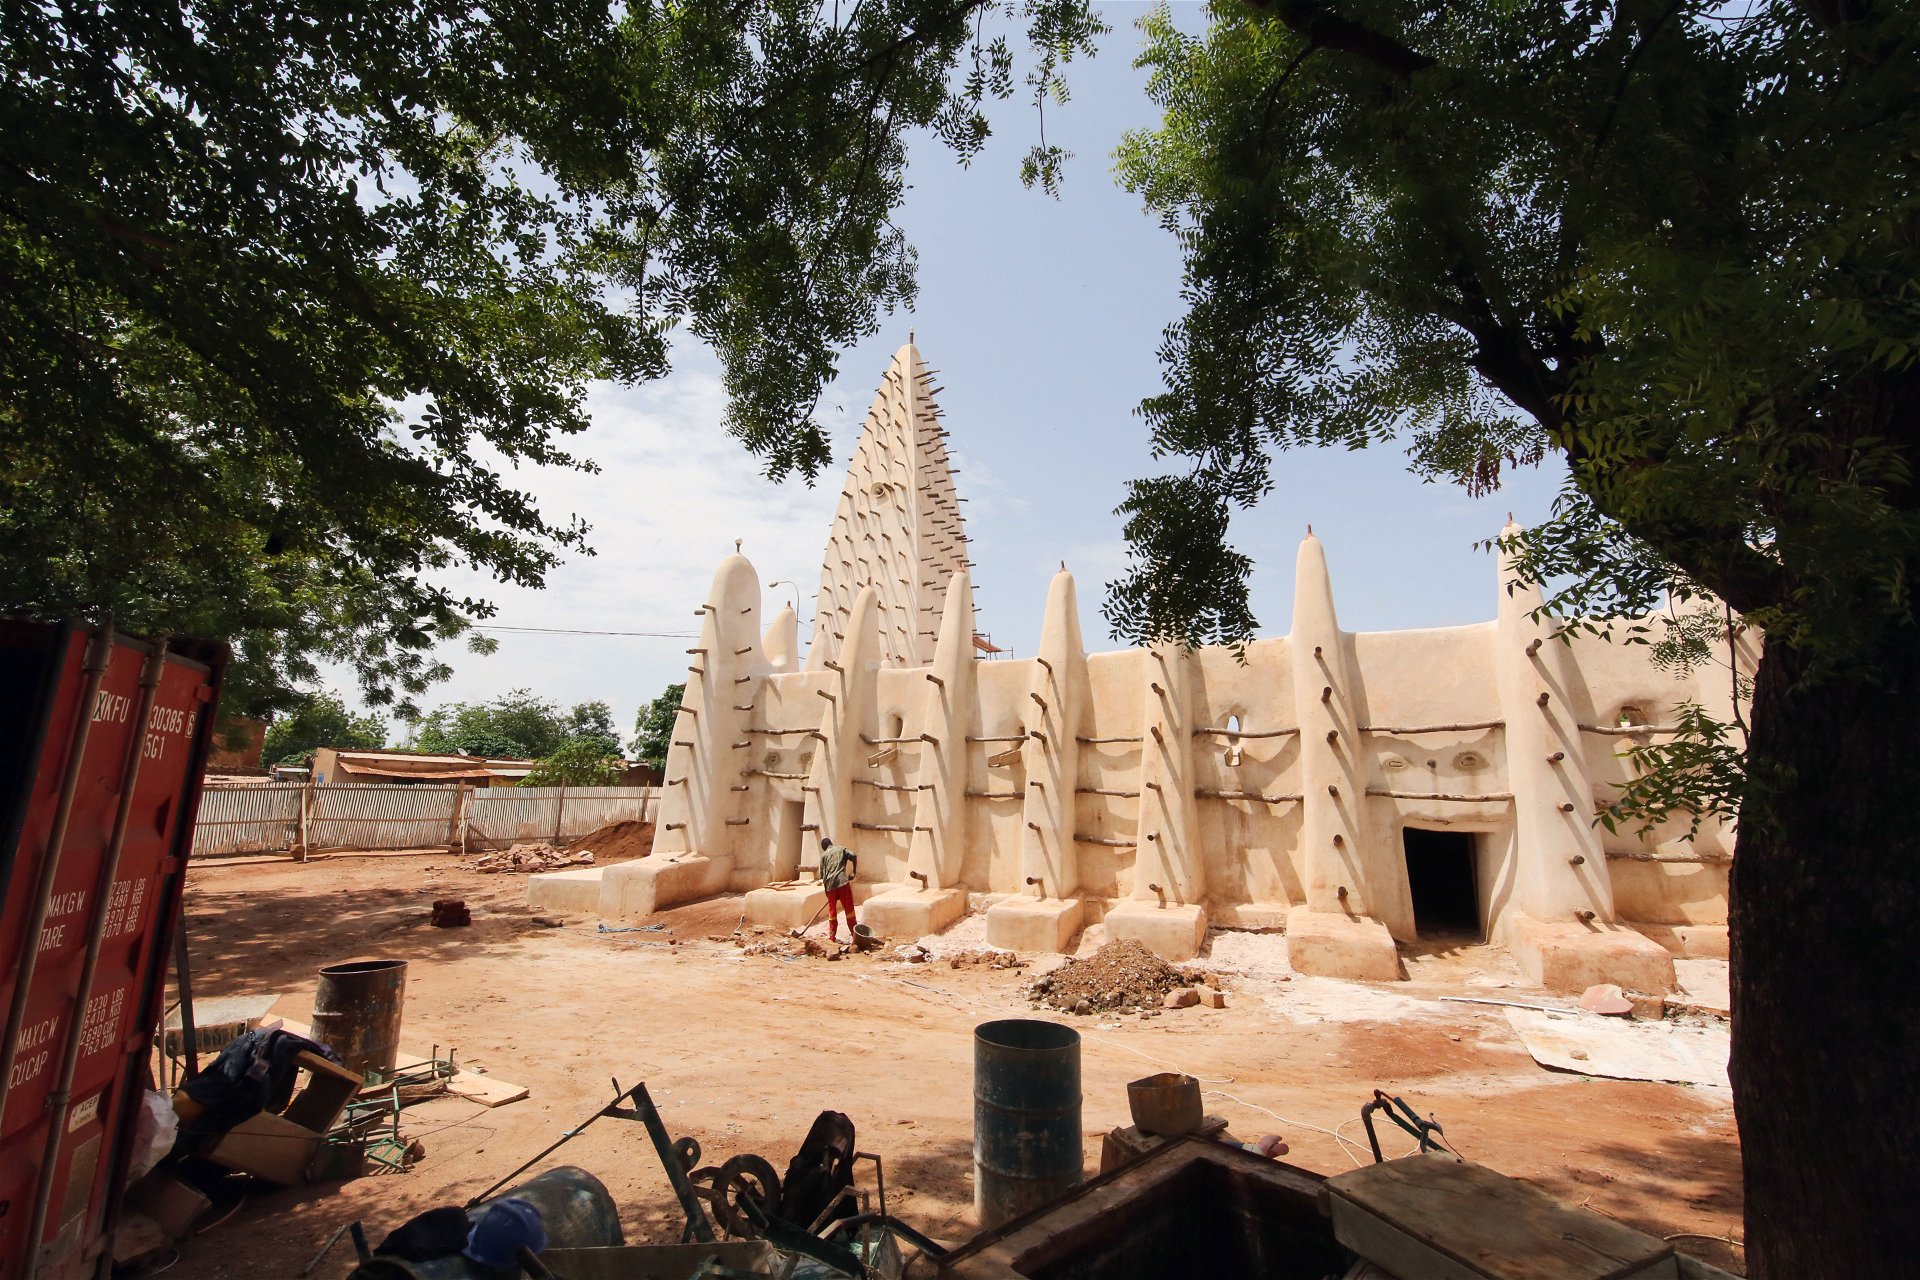 Naturnahe Bauten: Man kennt die beeindruckenden Lehmbauten aus Mali, aber auch bei dieser Moschee in Burkina Faso wurden lokale Materialen verwendet. dom-publishers.com